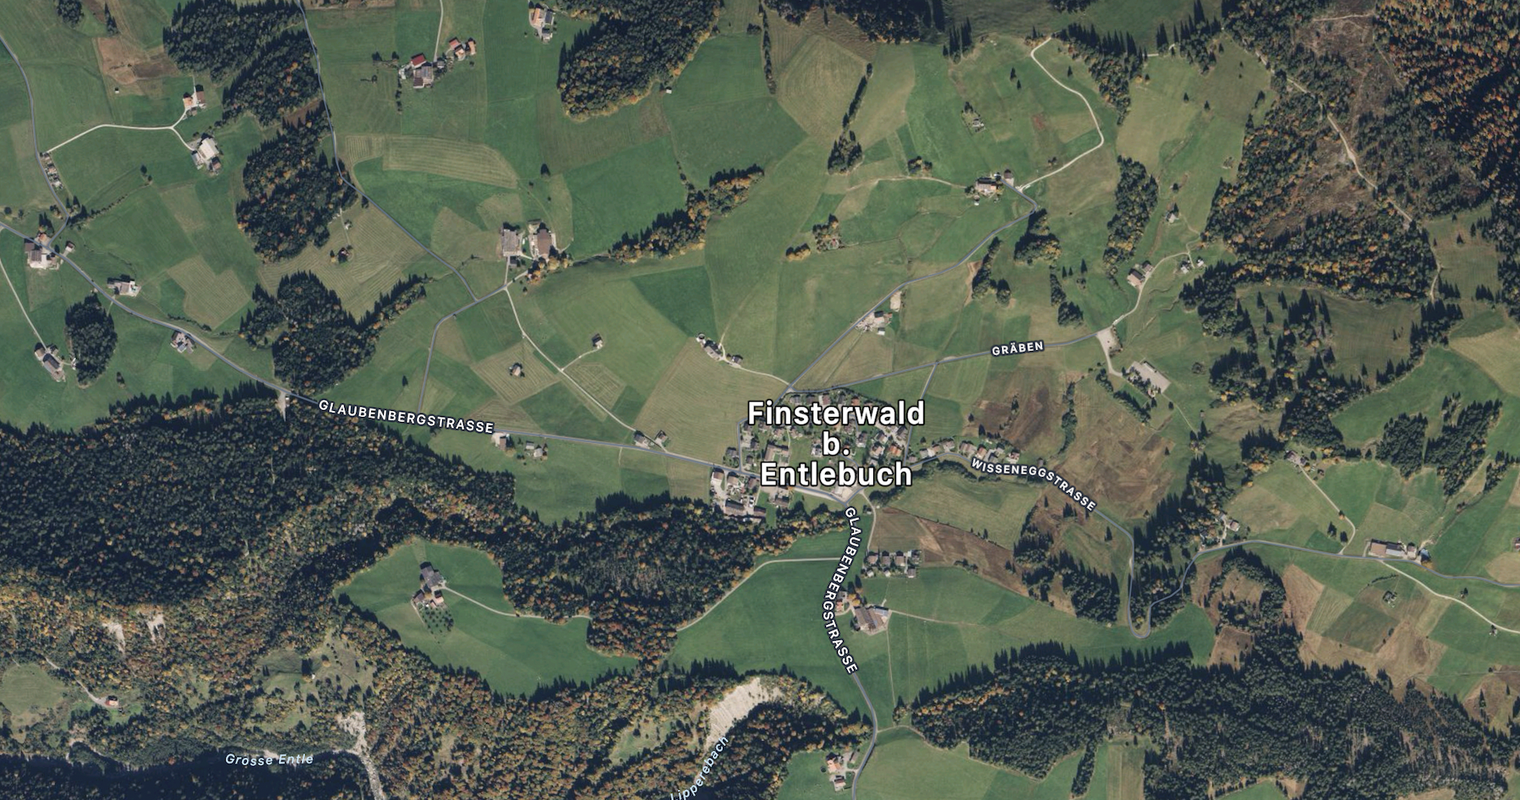 Forstarbeiter nach Unfall in Finsterwald verstorben